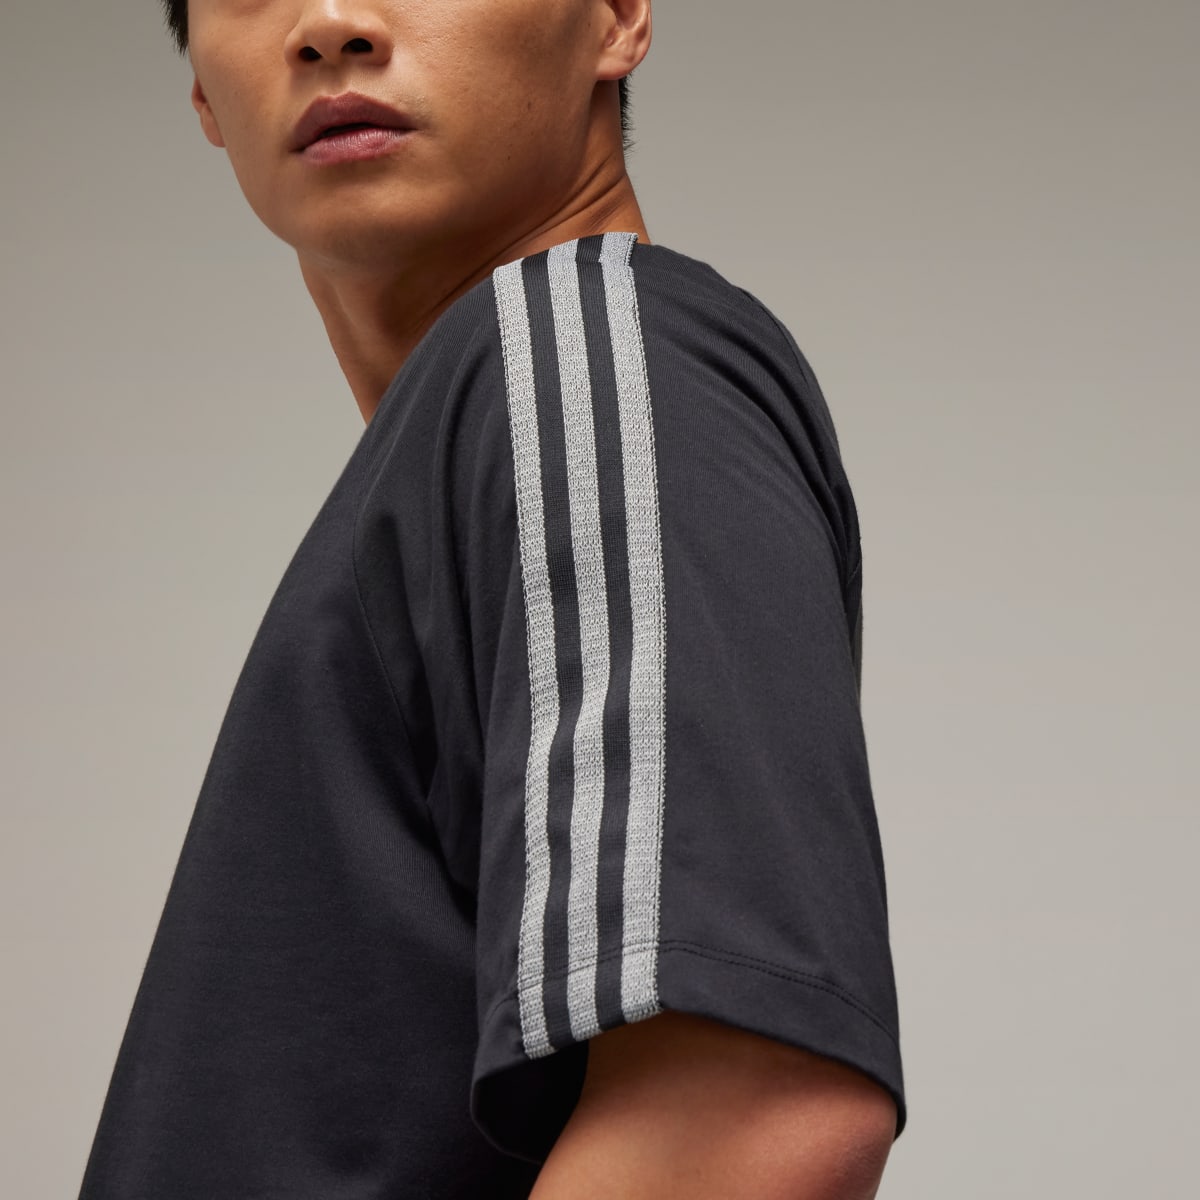 Adidas Y-3 3-Stripes Short Sleeve T-Shirt. 5